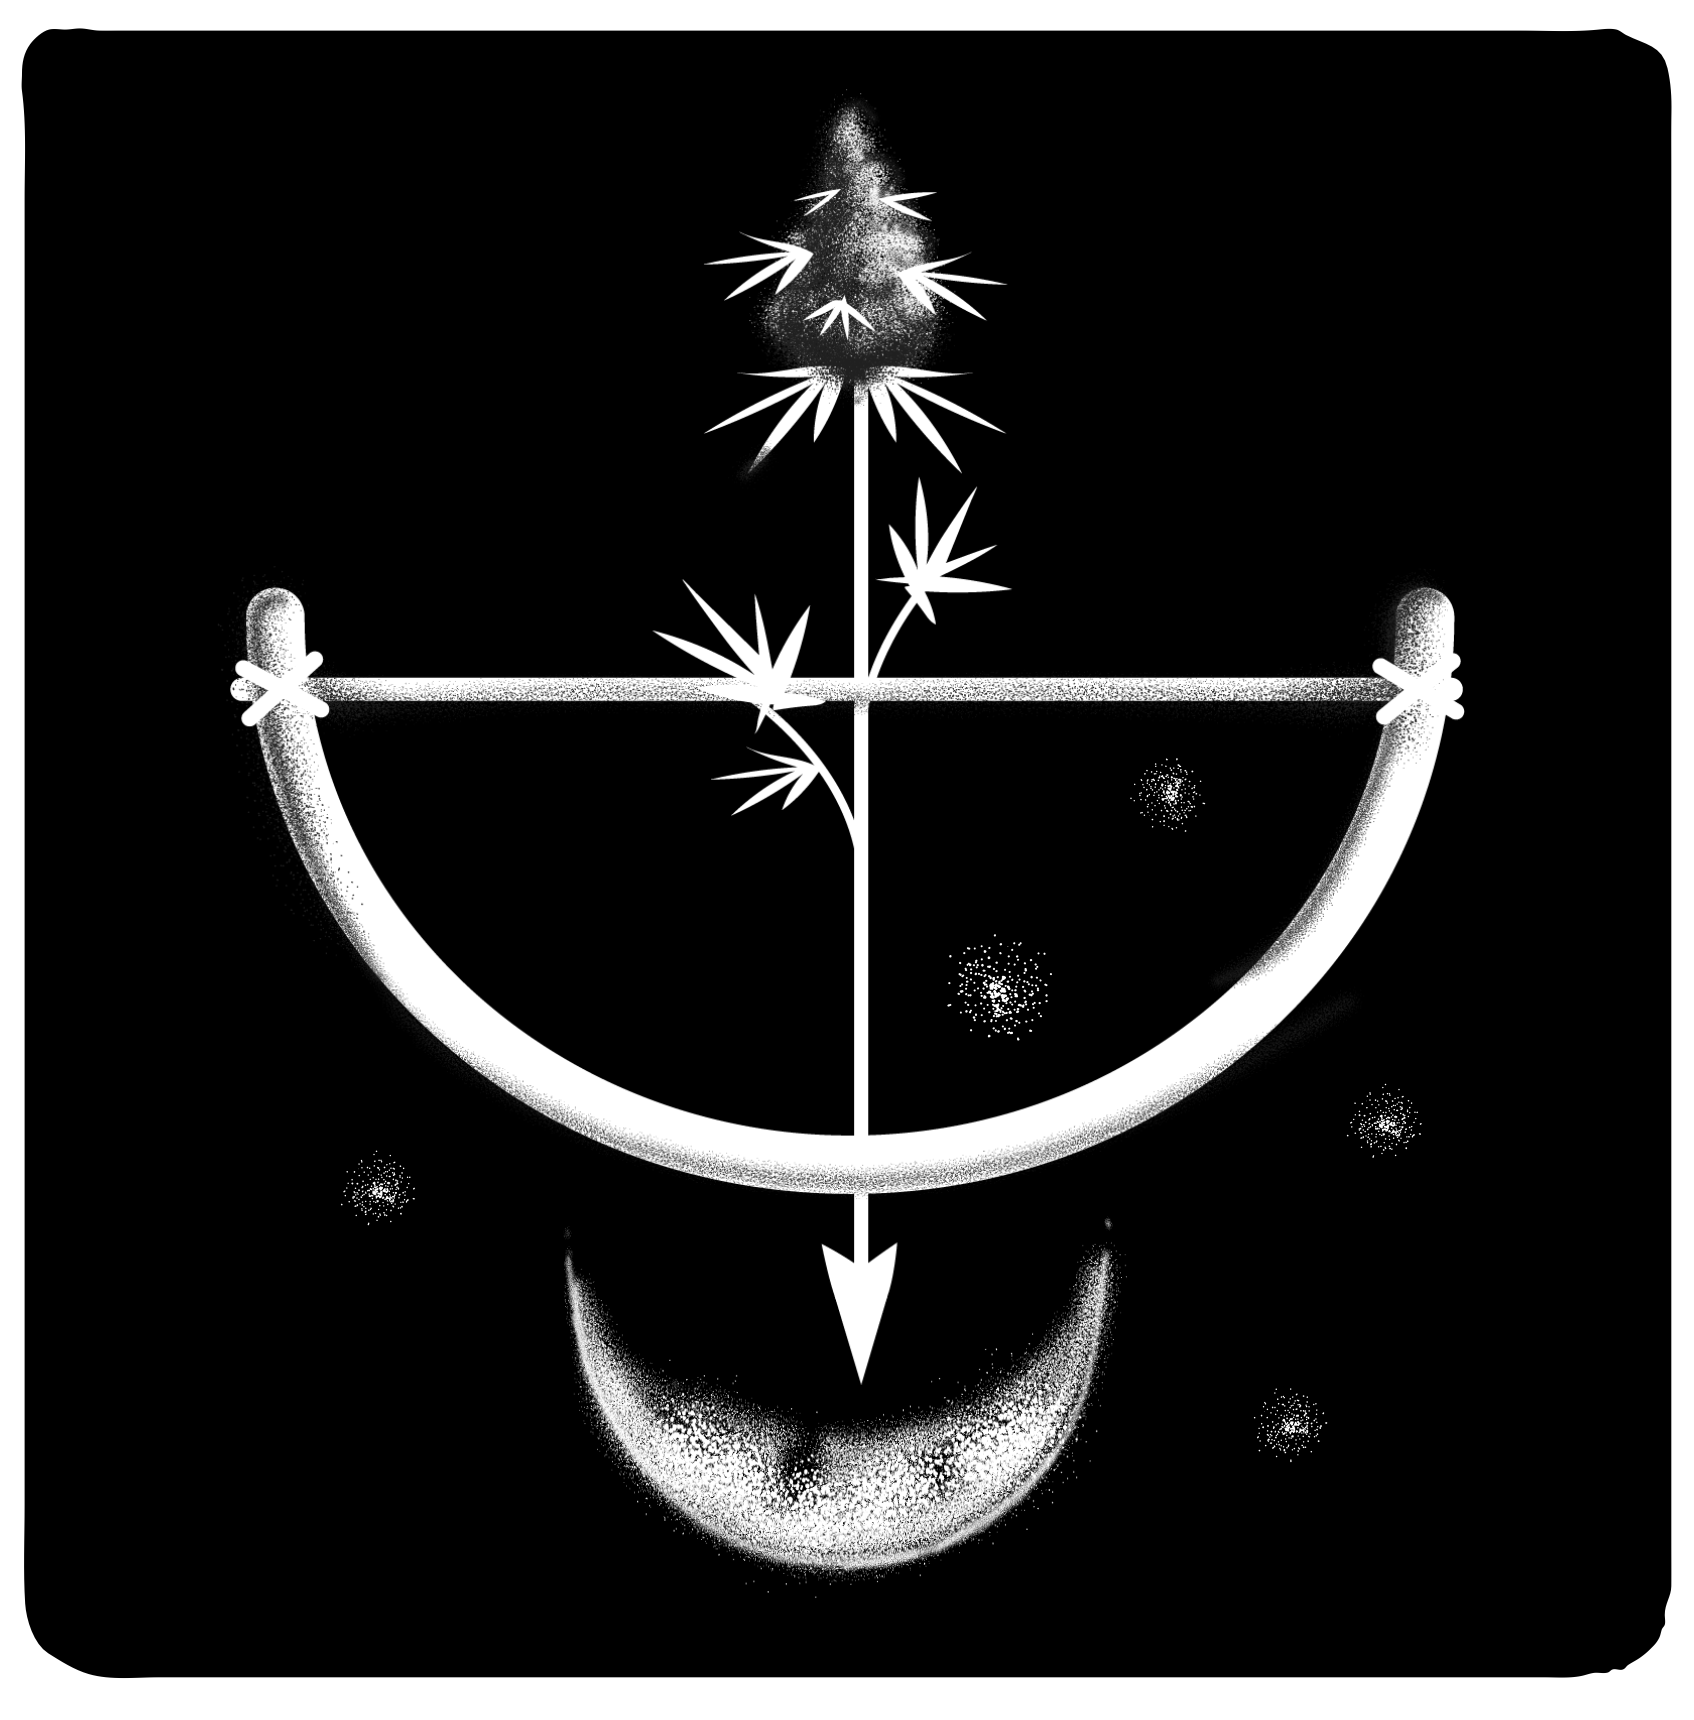 Cannabis plant arrowhead illustration